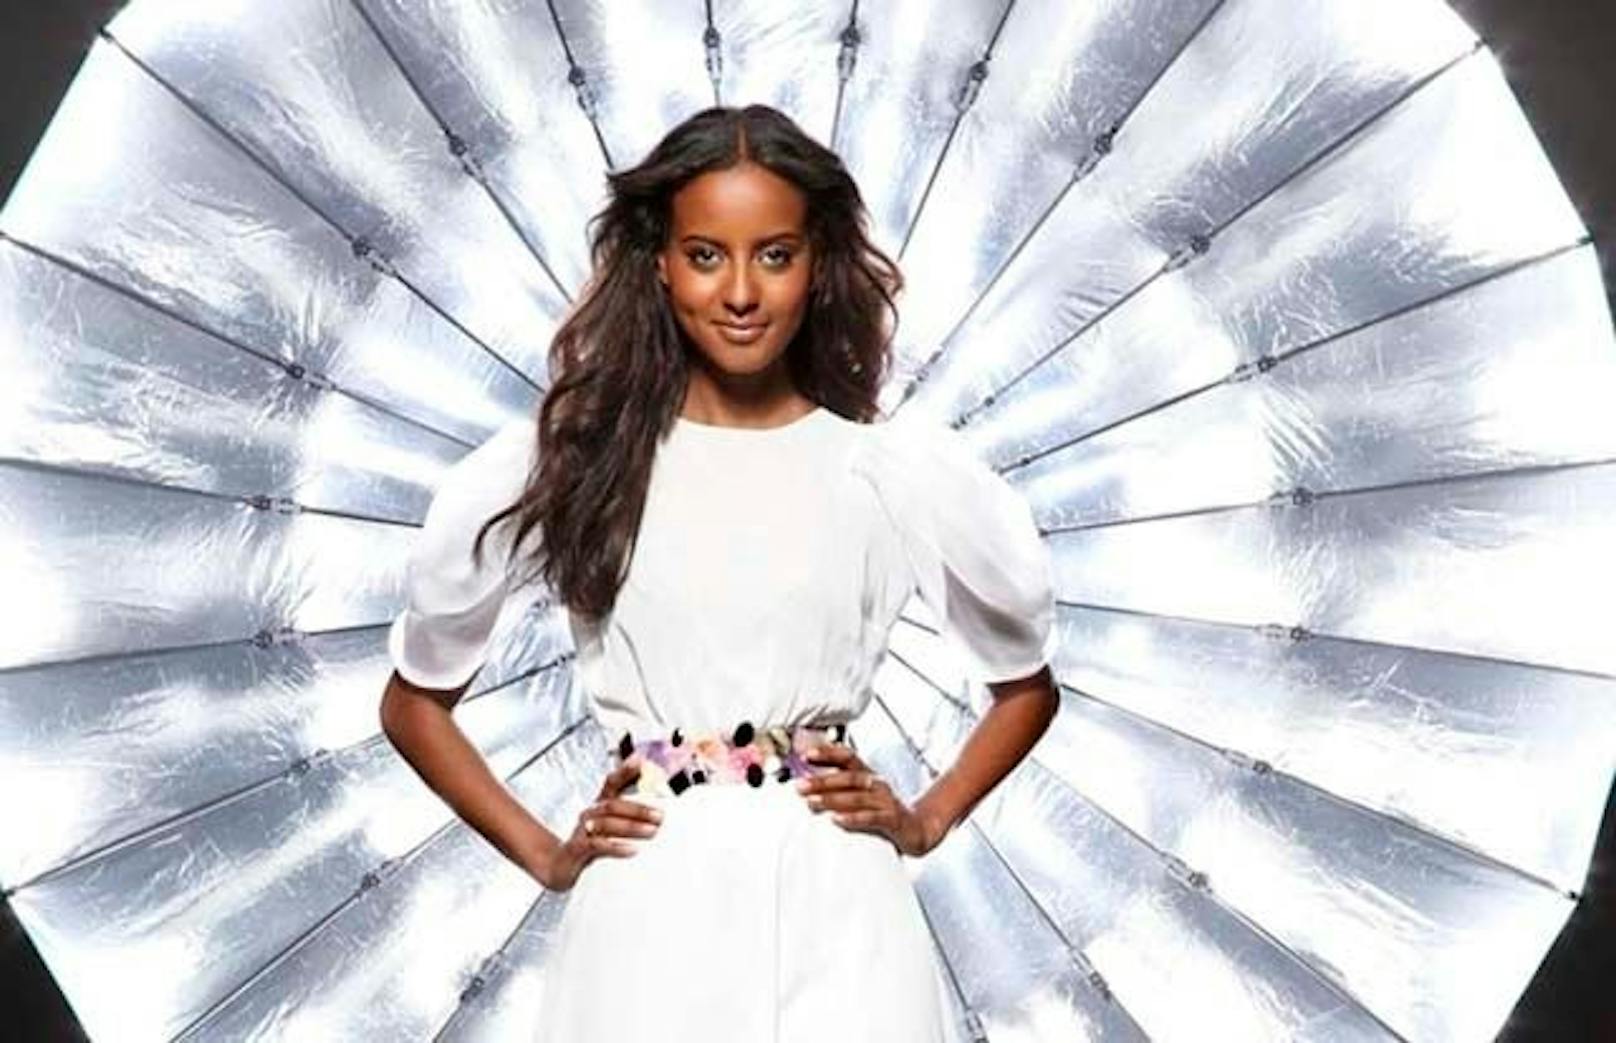 2019 war Sara Nuru auf dem Sieger Cover der "Cosmopolitan". Danach arbeitete sie für Roberto Cavalli, Gant und Maybelline Jade. Mittlerweile ist sie hauptsächlich für Wohltätigkeitsorganisationen im Einsatz. Mit ihrer Schwester hat sie das Unternehmen "nuruCaffee" gegründet, mit dem sie äthiopische Frauen unterstützt.